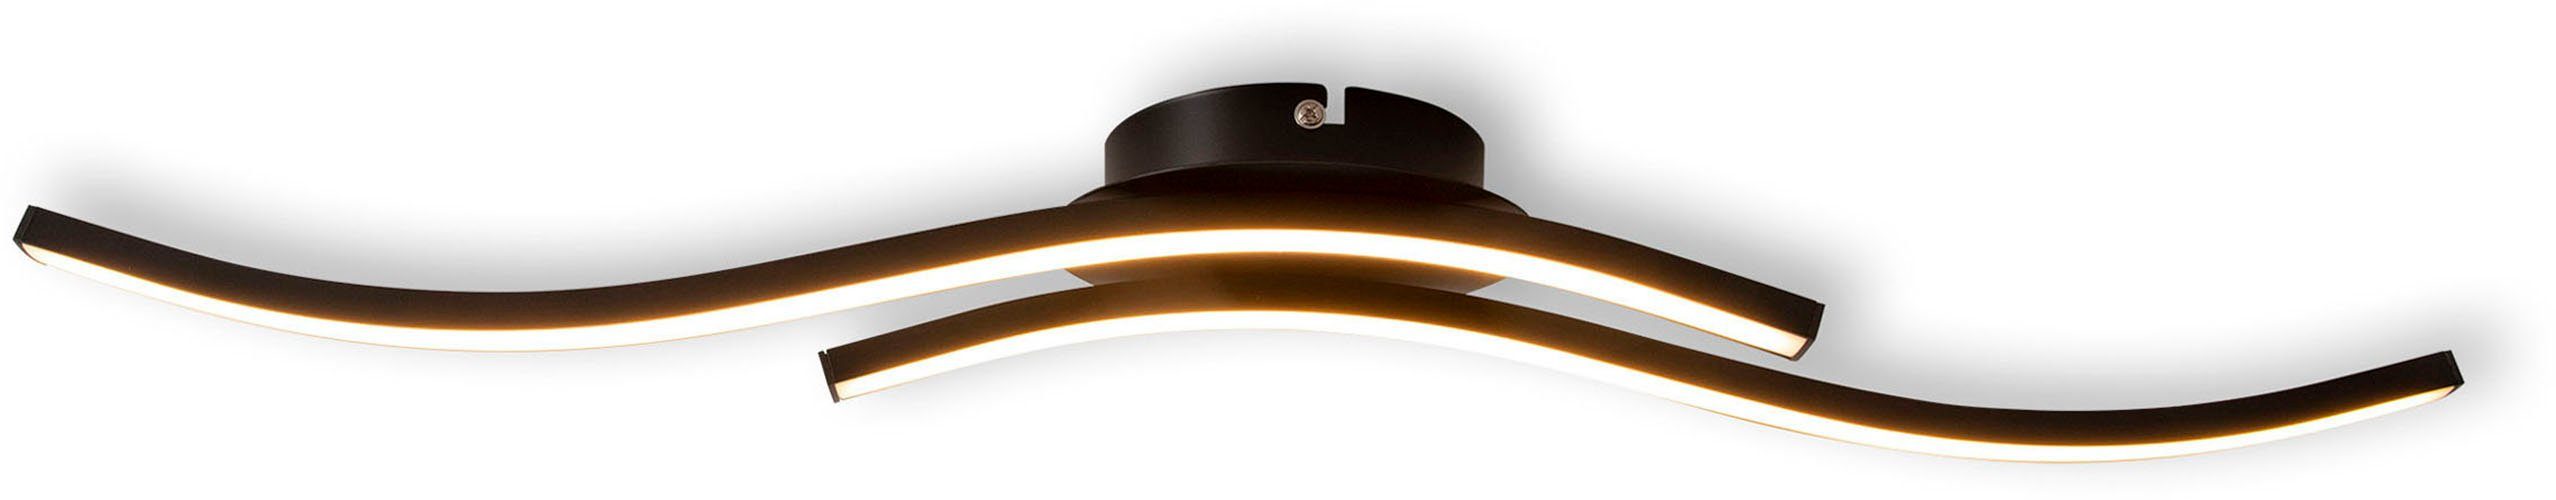 Deckenlampe, fest 65cm, Onda, schwarz-matt, Warmweiß, warmweiß, Wandleuchte integriert, LED L: näve 12W, LED IP20 Deckenleuchte